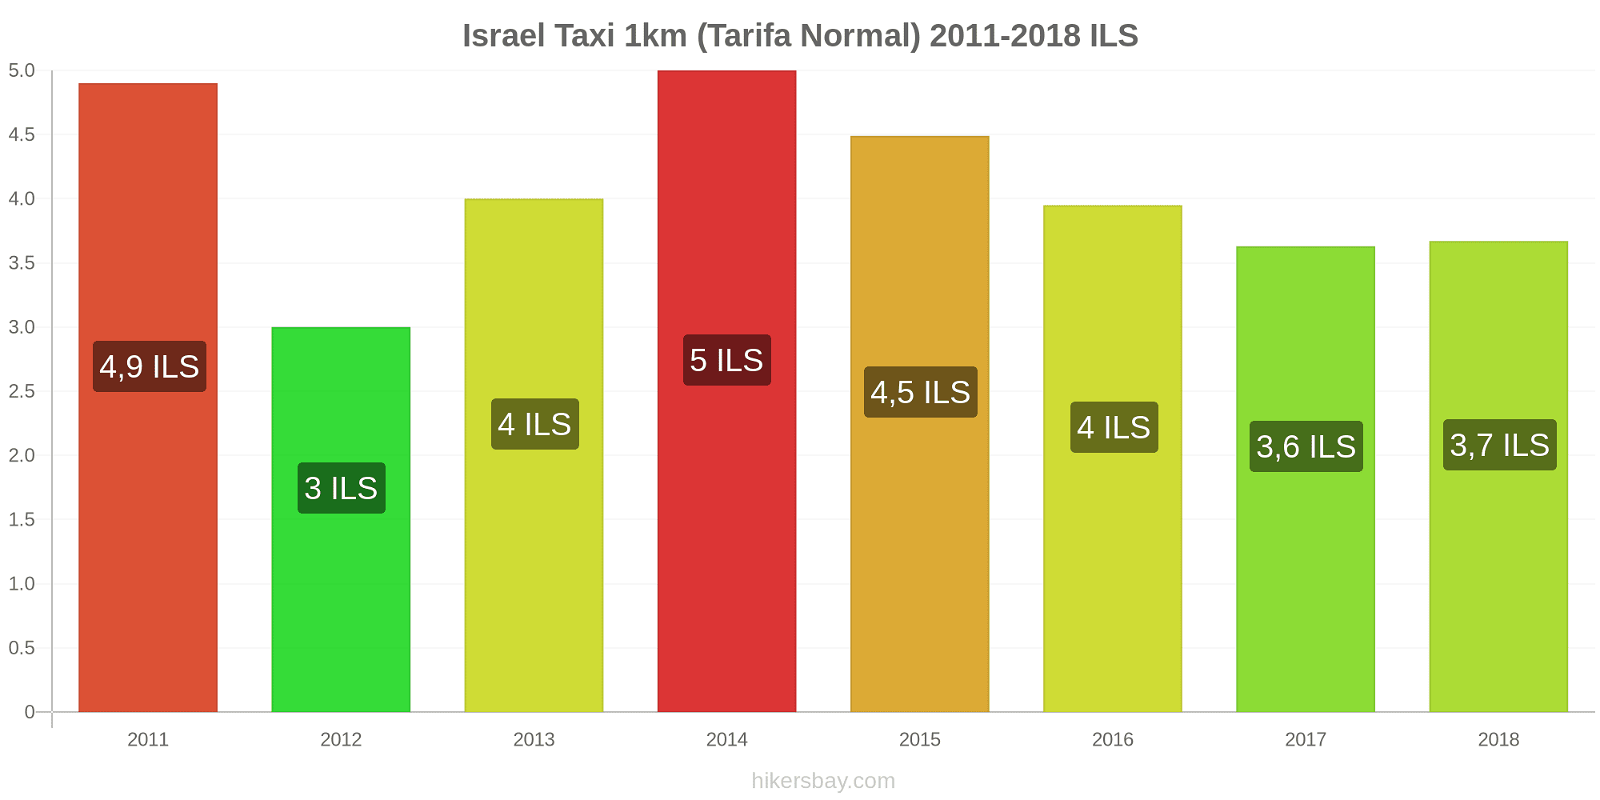 Israel cambios de precios Taxi 1km (tarifa normal) hikersbay.com